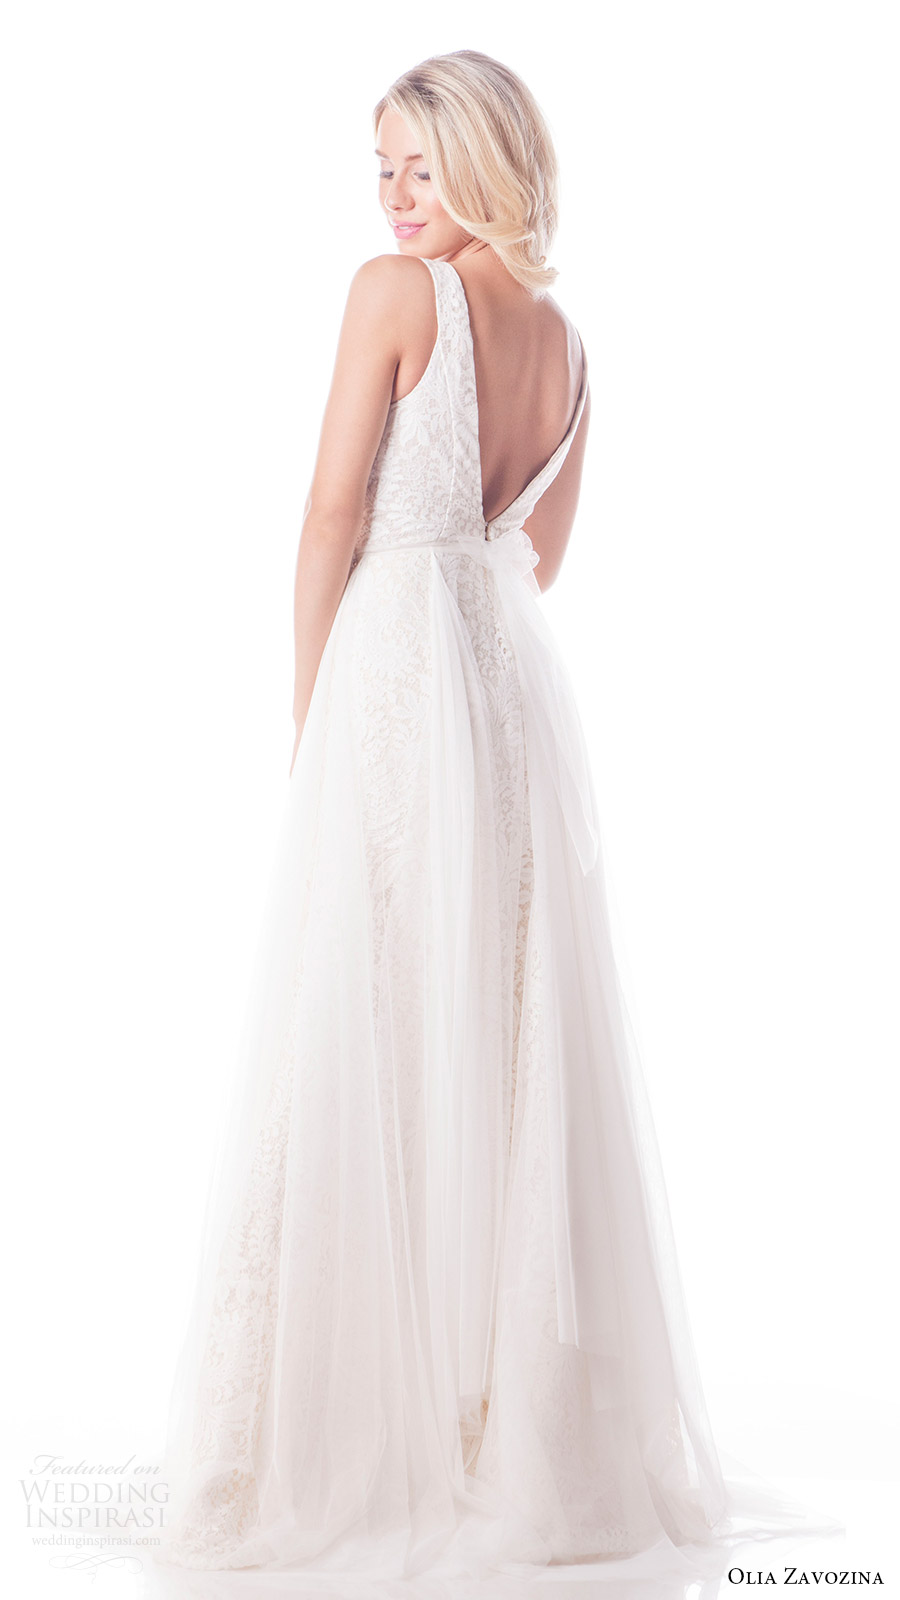 olia zavozina bridal spring 2017 sleeveless vneck fit flare wedding dress (lisa) bv vback tulle overskirt